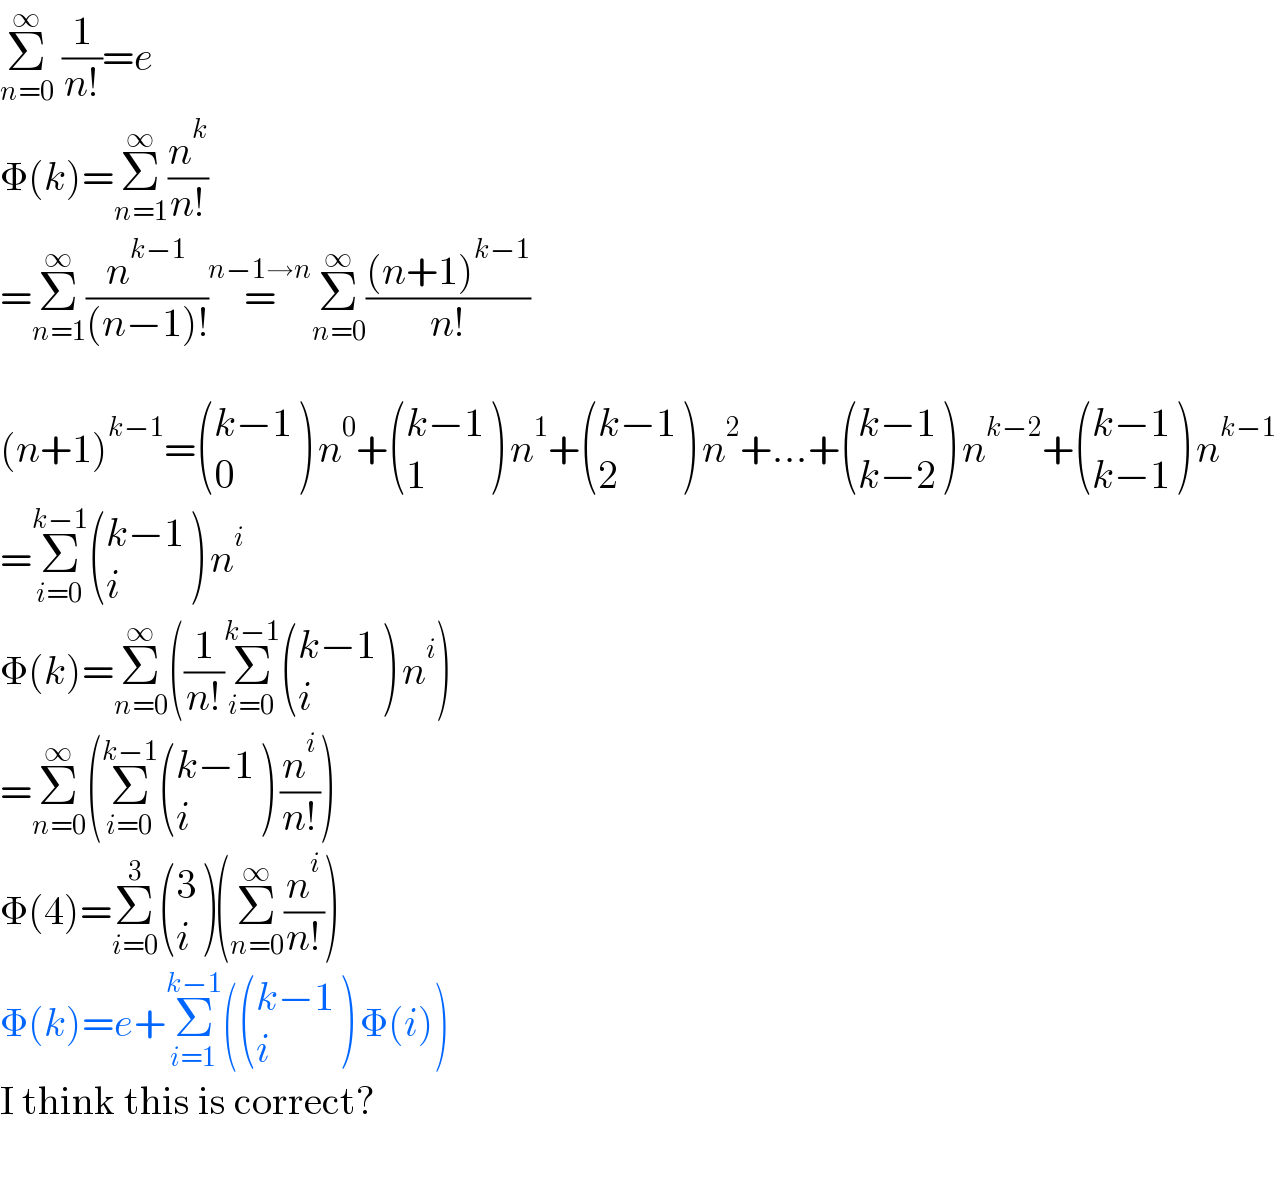 Σ_(n=0) ^∞  (1/(n!))=e  Φ(k)=Σ_(n=1) ^∞ (n^k /(n!))  =Σ_(n=1) ^∞ (n^(k−1) /((n−1)!))=^(n−1→n) Σ_(n=0) ^∞ (((n+1)^(k−1) )/(n!))    (n+1)^(k−1) = (((k−1)),(0) ) n^0 + (((k−1)),(1) ) n^1 + (((k−1)),(2) ) n^2 +...+ (((k−1)),((k−2)) ) n^(k−2) + (((k−1)),((k−1)) ) n^(k−1)   =Σ_(i=0) ^(k−1)  (((k−1)),(i) ) n^i   Φ(k)=Σ_(n=0) ^∞ ((1/(n!))Σ_(i=0) ^(k−1)  (((k−1)),(i) ) n^i )  =Σ_(n=0) ^∞ (Σ_(i=0) ^(k−1)  (((k−1)),(i) ) (n^i /(n!)))  Φ(4)=Σ_(i=0) ^3  ((3),(i) )(Σ_(n=0) ^∞ (n^i /(n!)))  Φ(k)=e+Σ_(i=1) ^(k−1) ( (((k−1)),(i) ) Φ(i))  I think this is correct?    